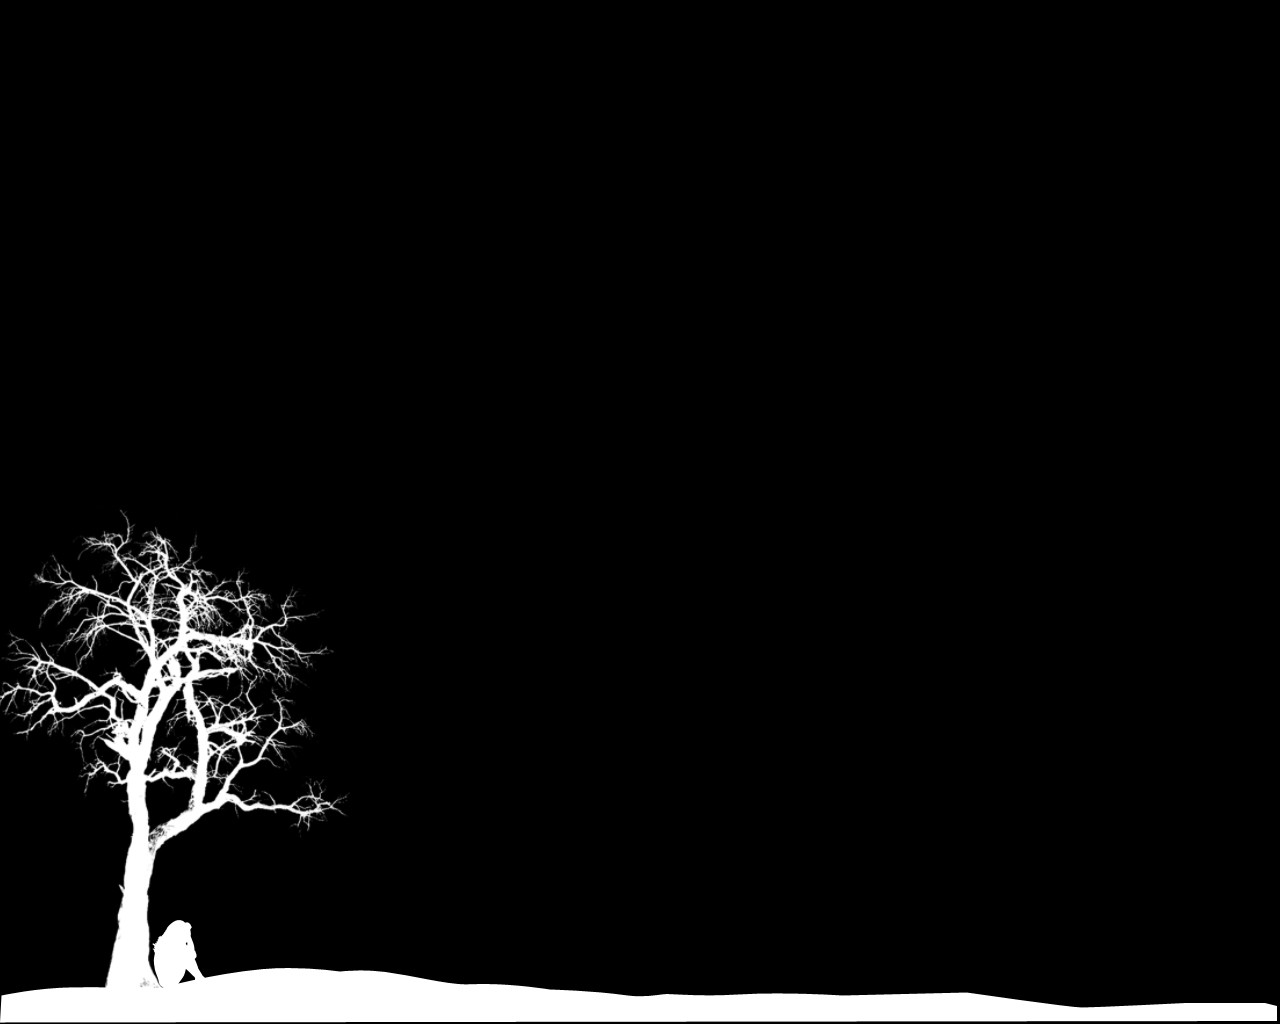 hình nền màu đen trắng ngồi 1 mình dưới gốc cây